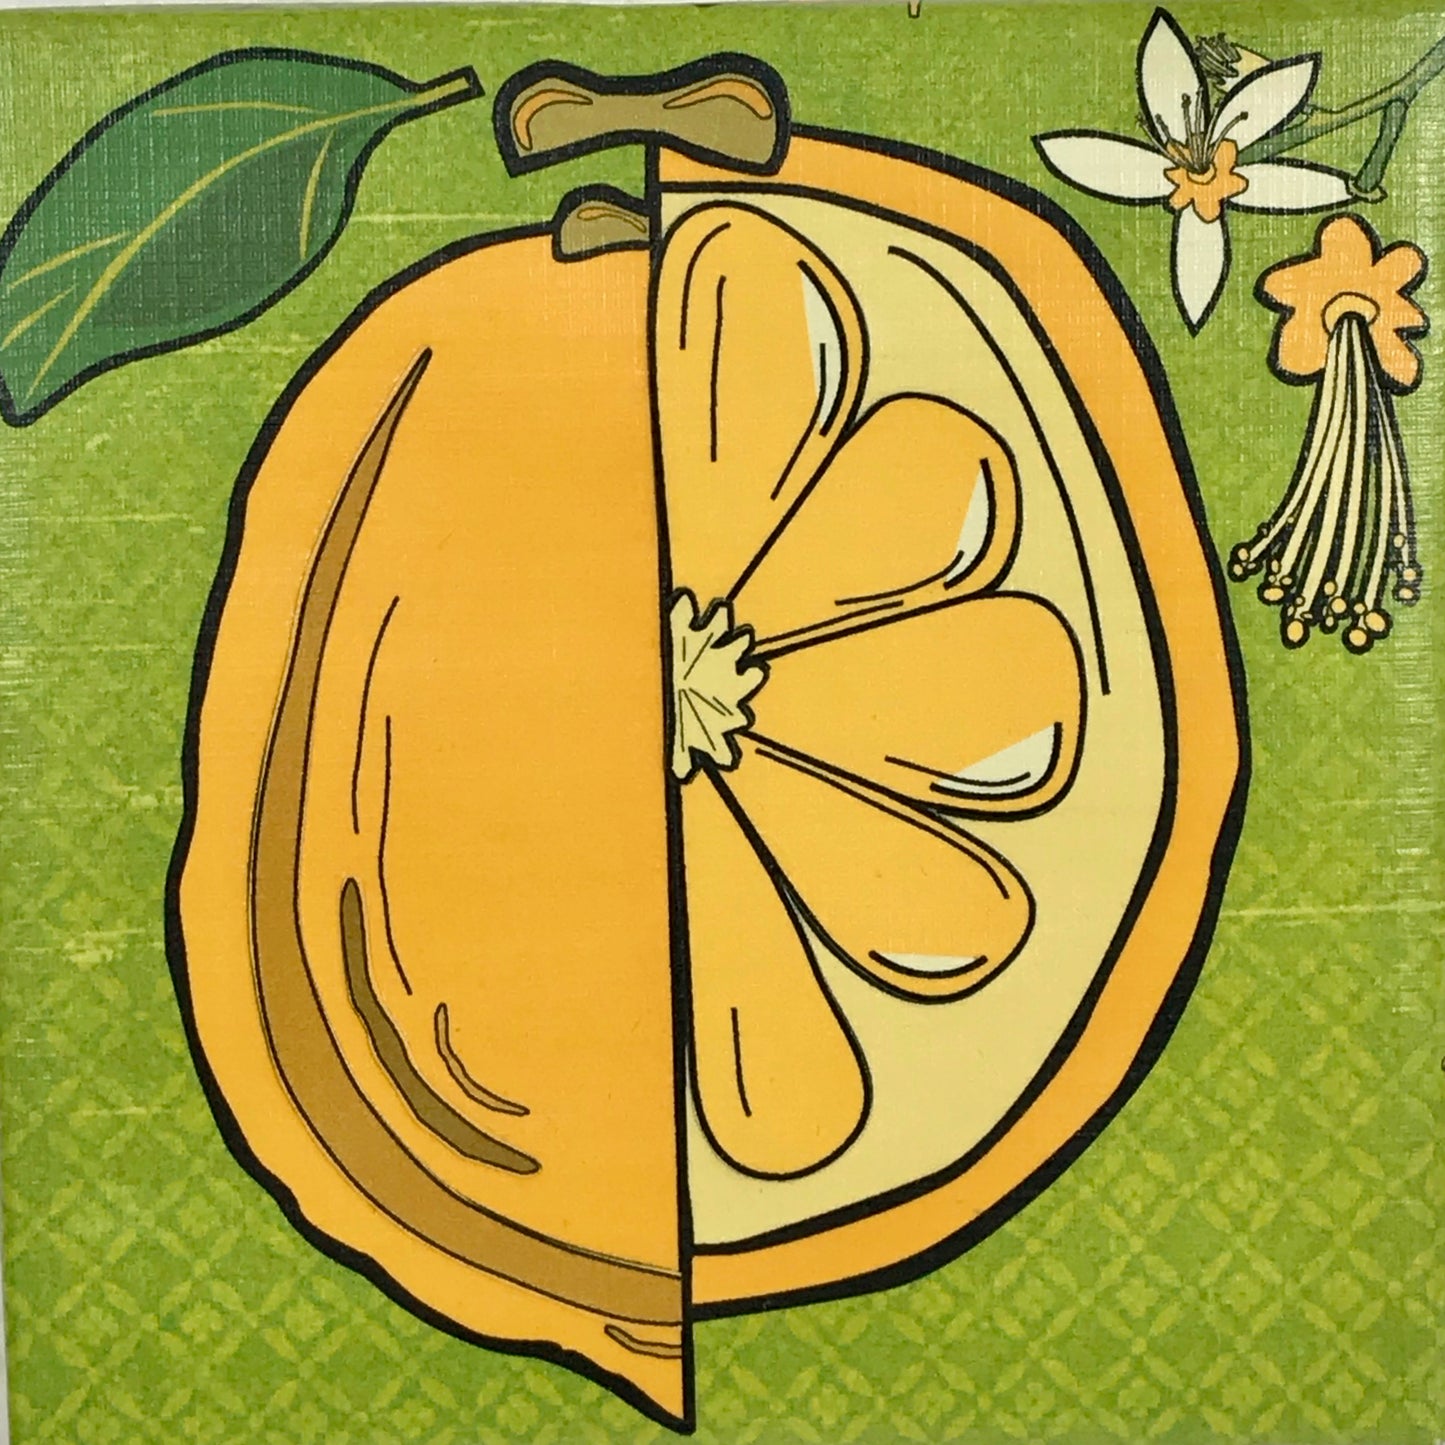 The Art of the Modern Lemon